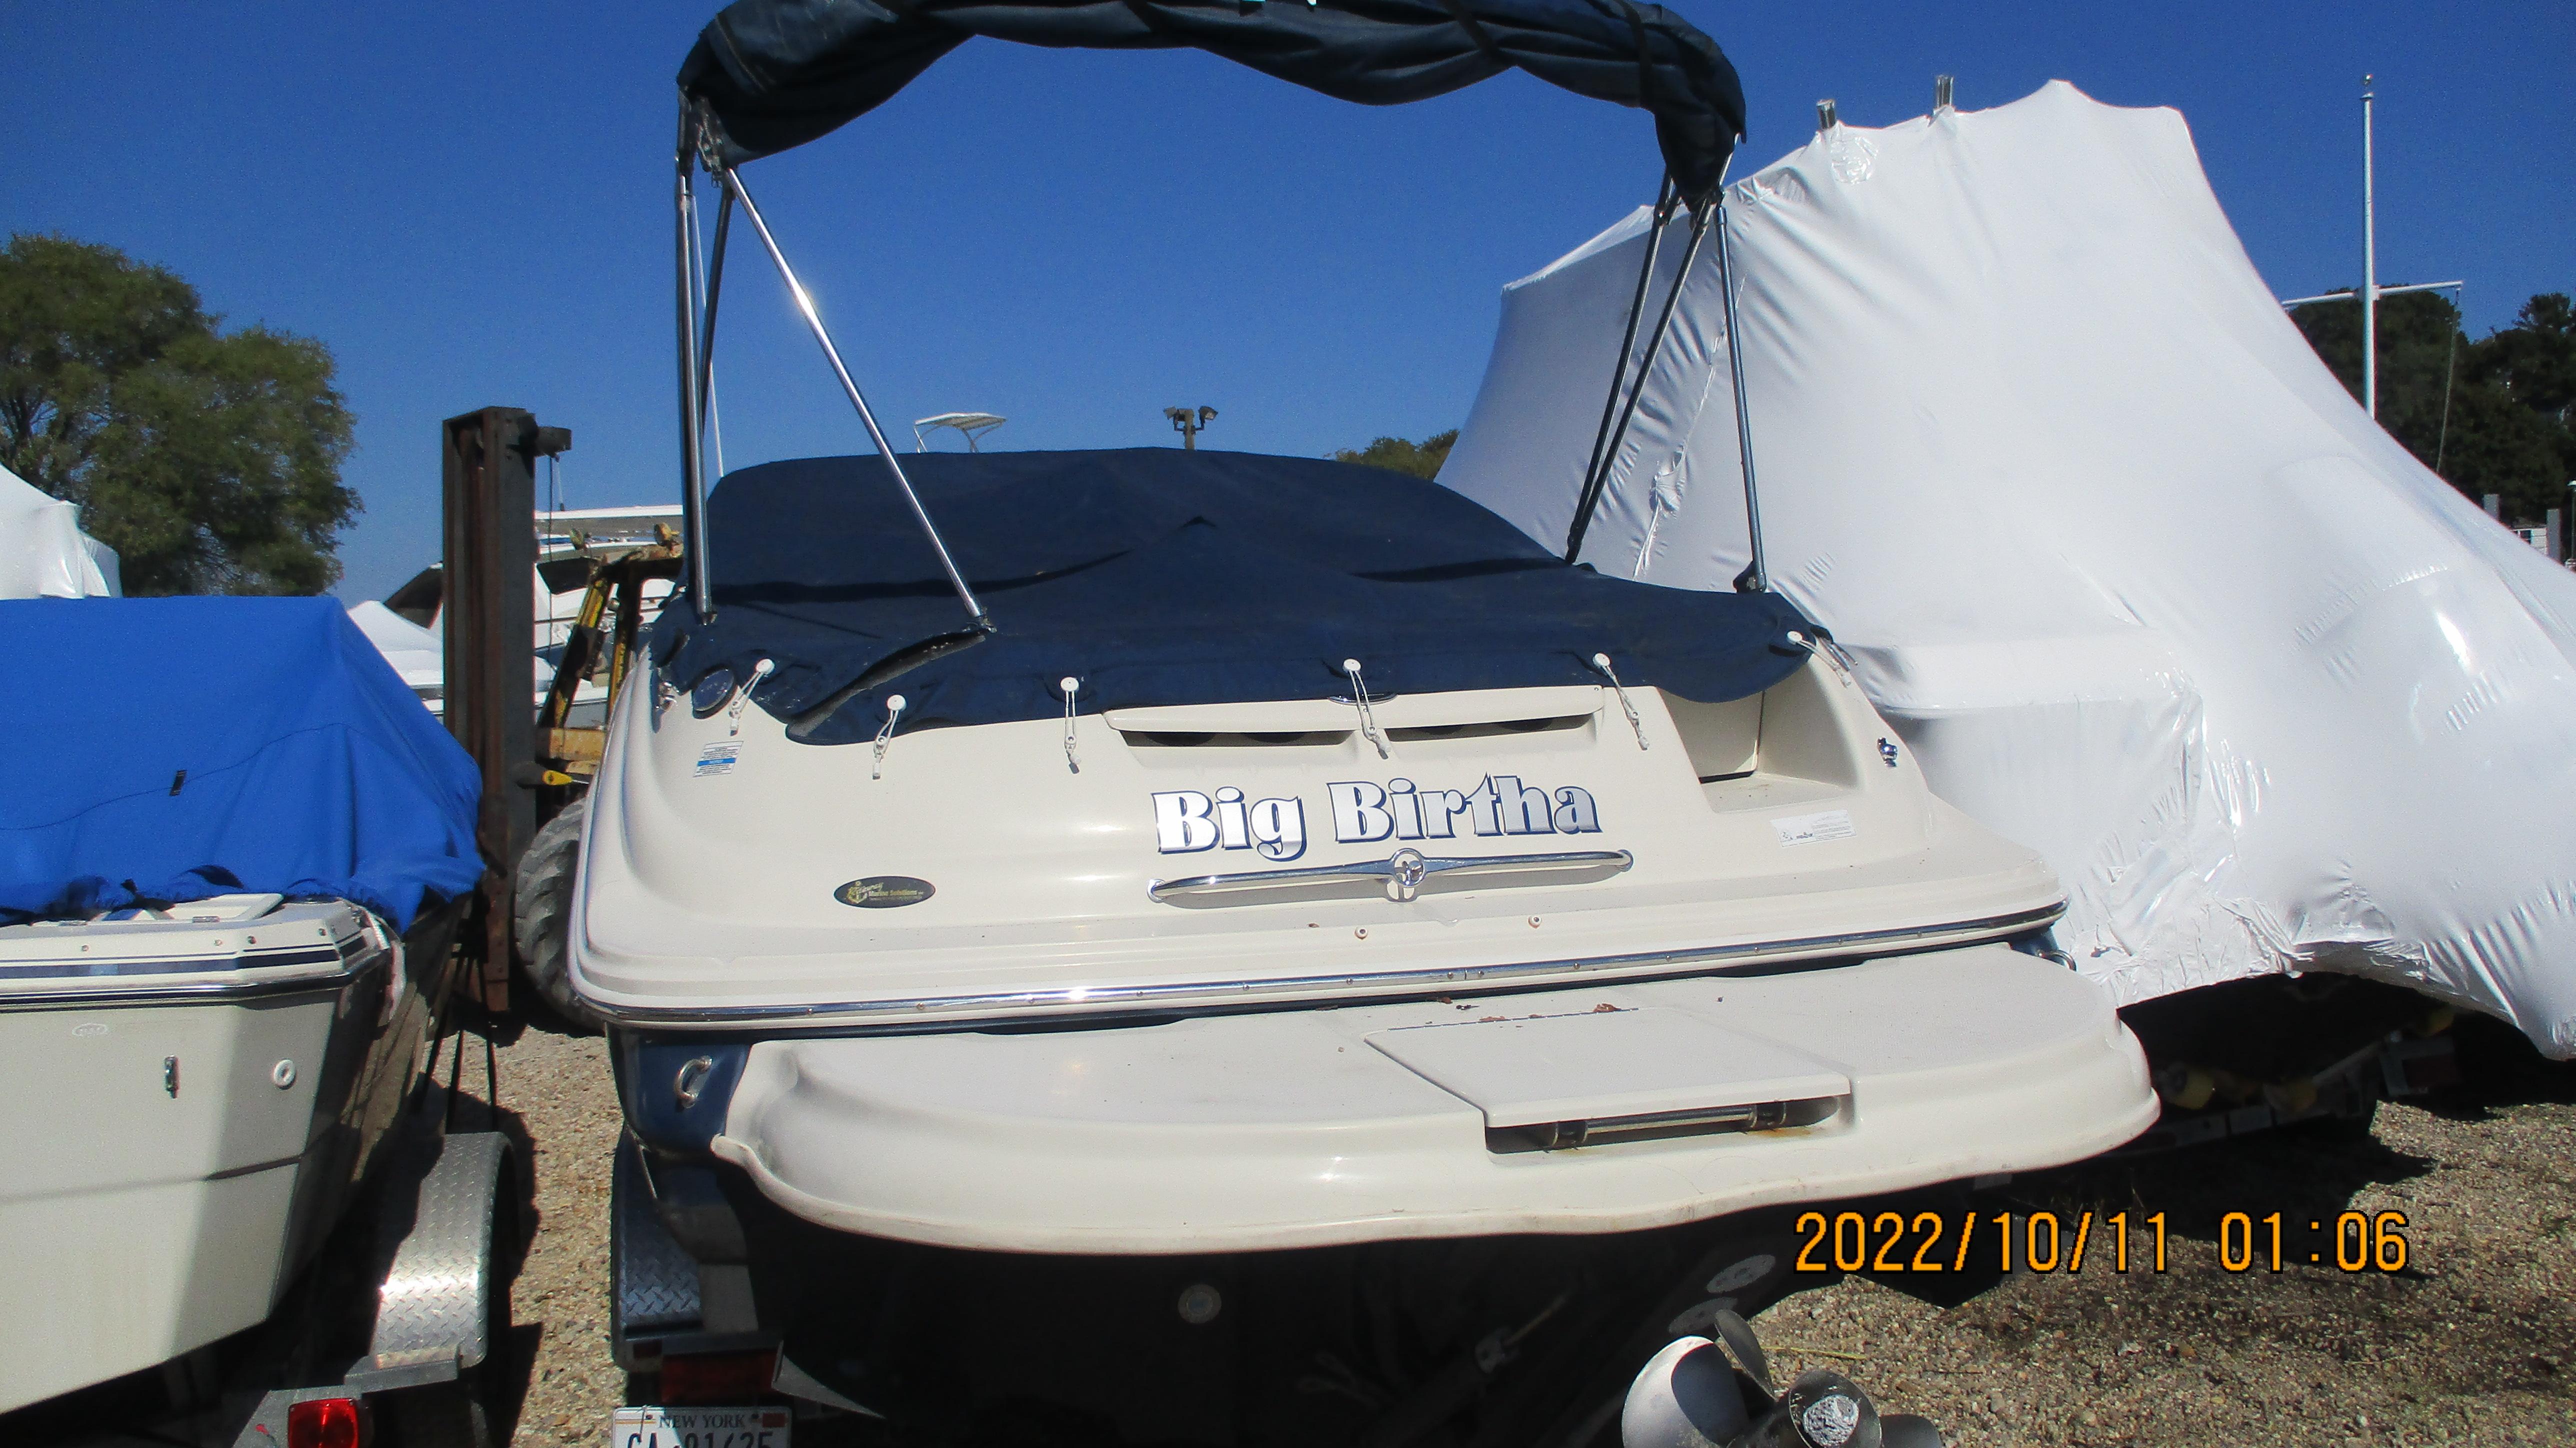 2008 Sea Ray 240 Sundeck